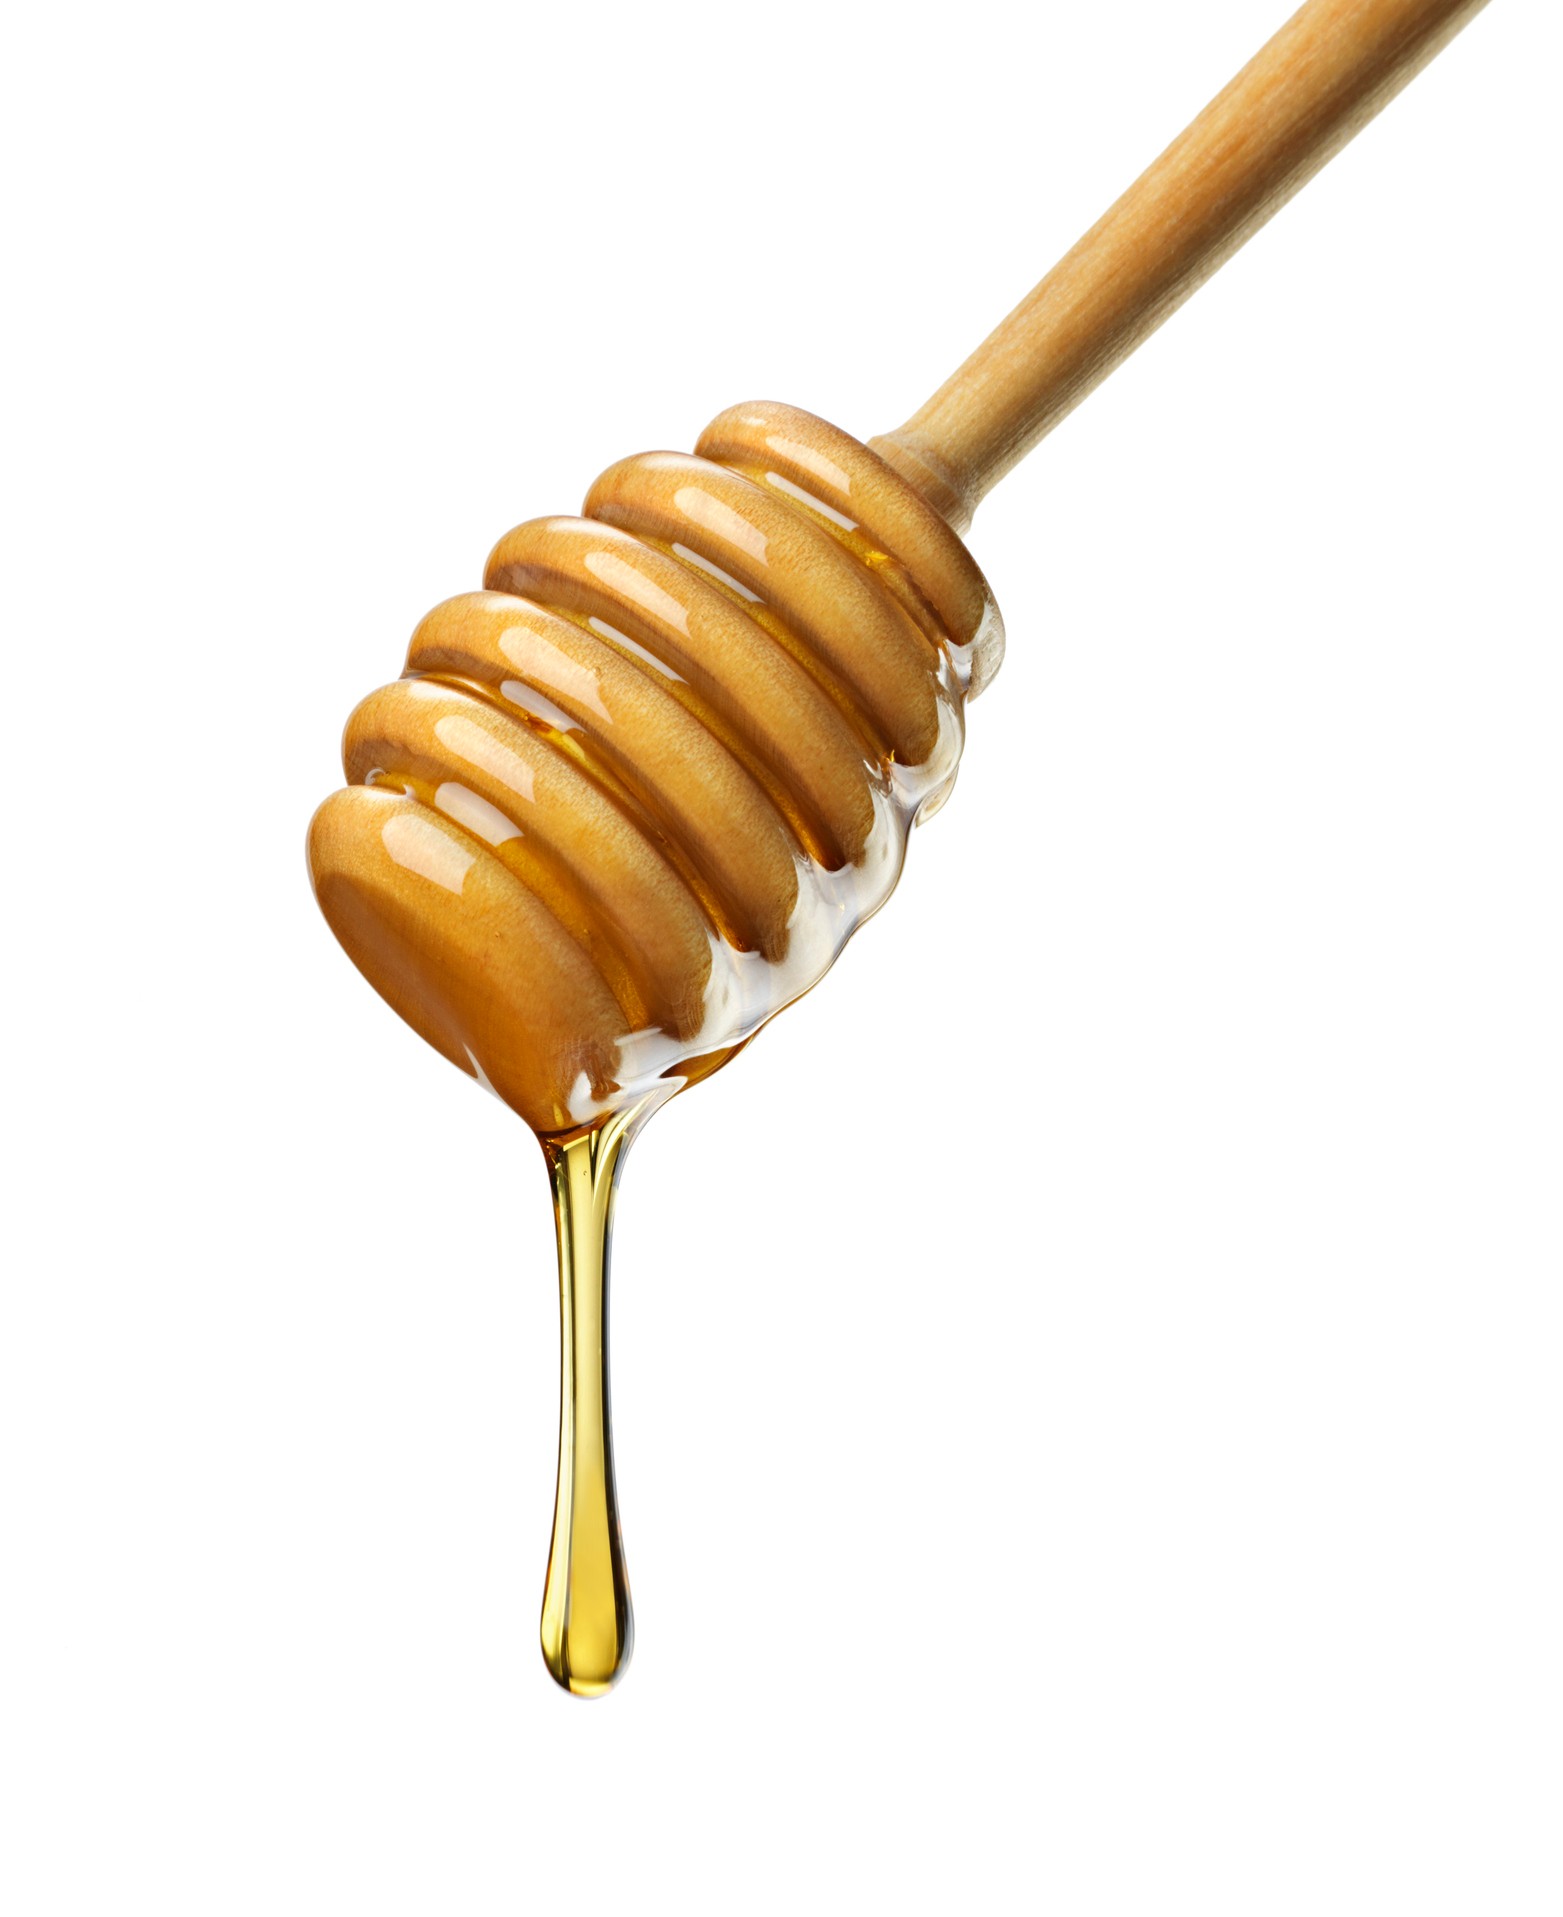 Honey Uses - Honey for Men' Secretly Contains Viagra, FDA Warns